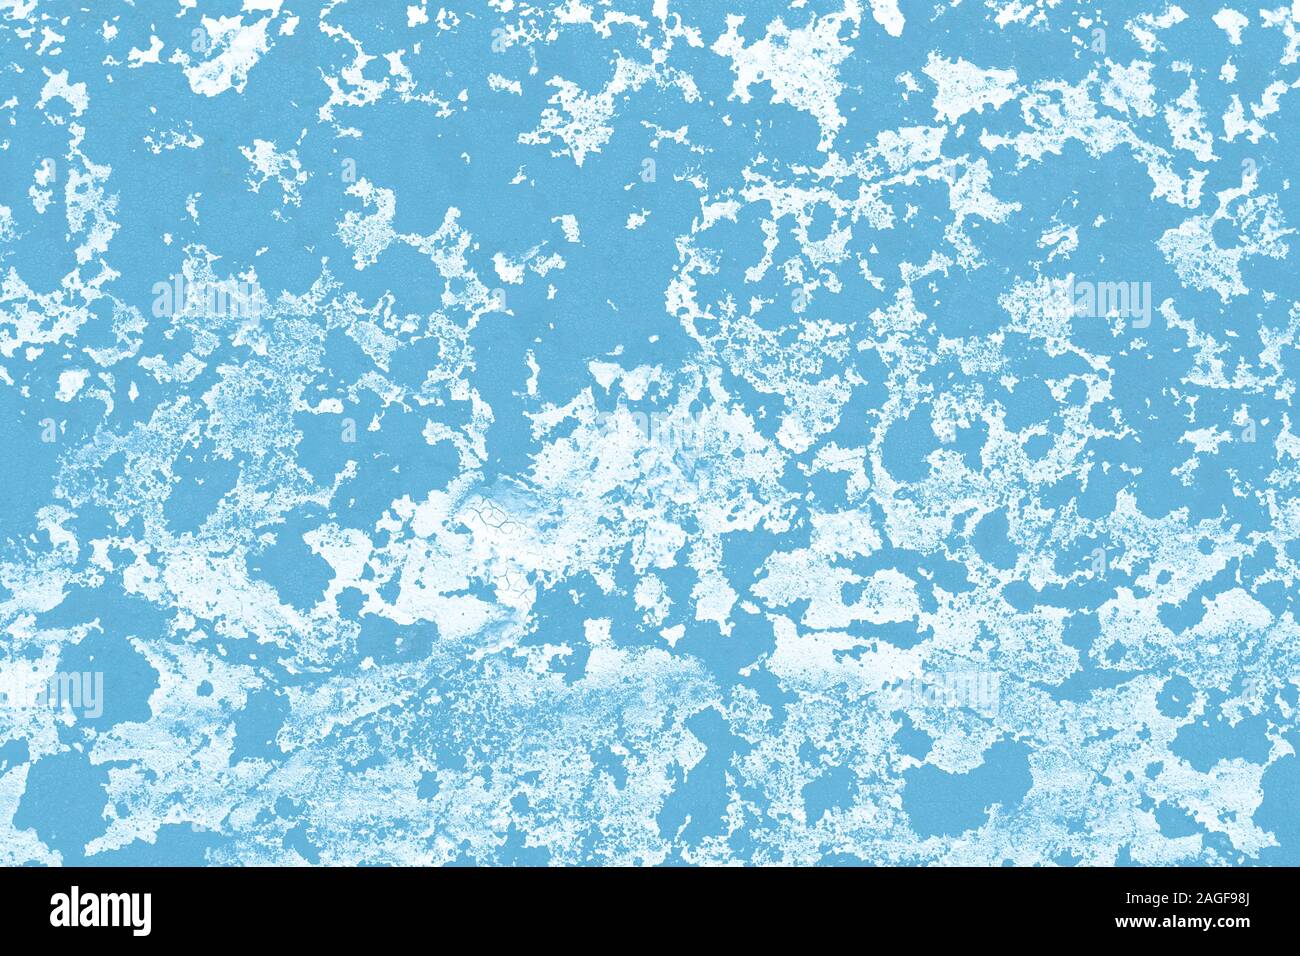 Blaue Farbe Flecken an der Wand, Leinwand. Abbildung mit blauen und weißen Flecken beschmutzt, hellen Hintergründen. Abstrakte Muster der Tinte. Kreative künstlerische Stockfoto